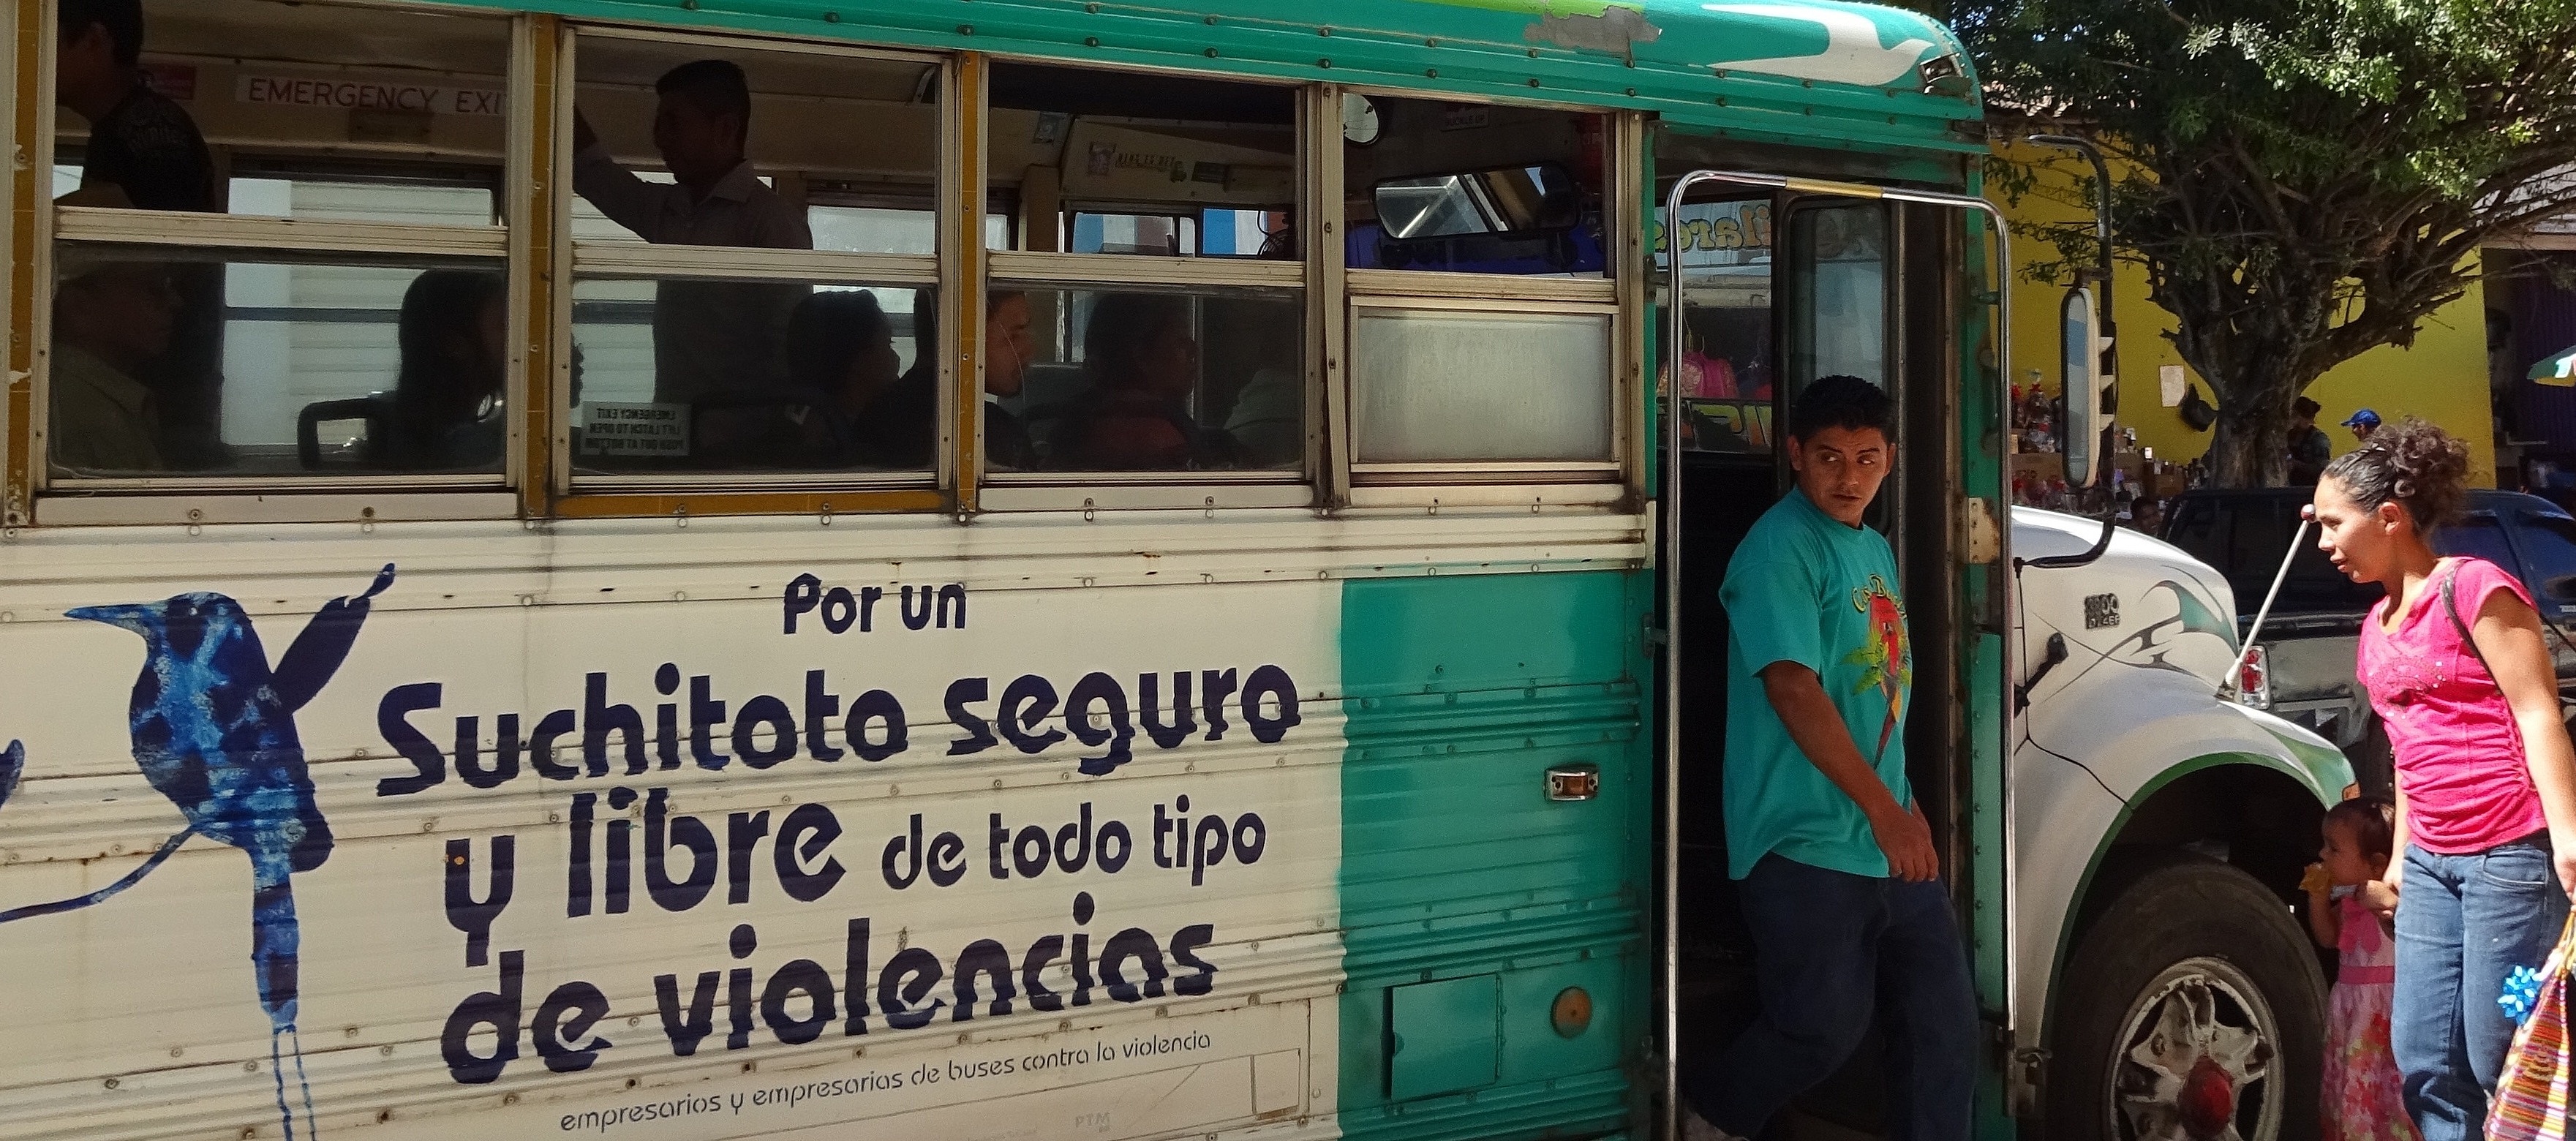 Menschen beim Ein- und Aussteigen in den/aus dem Bus in El Salvador